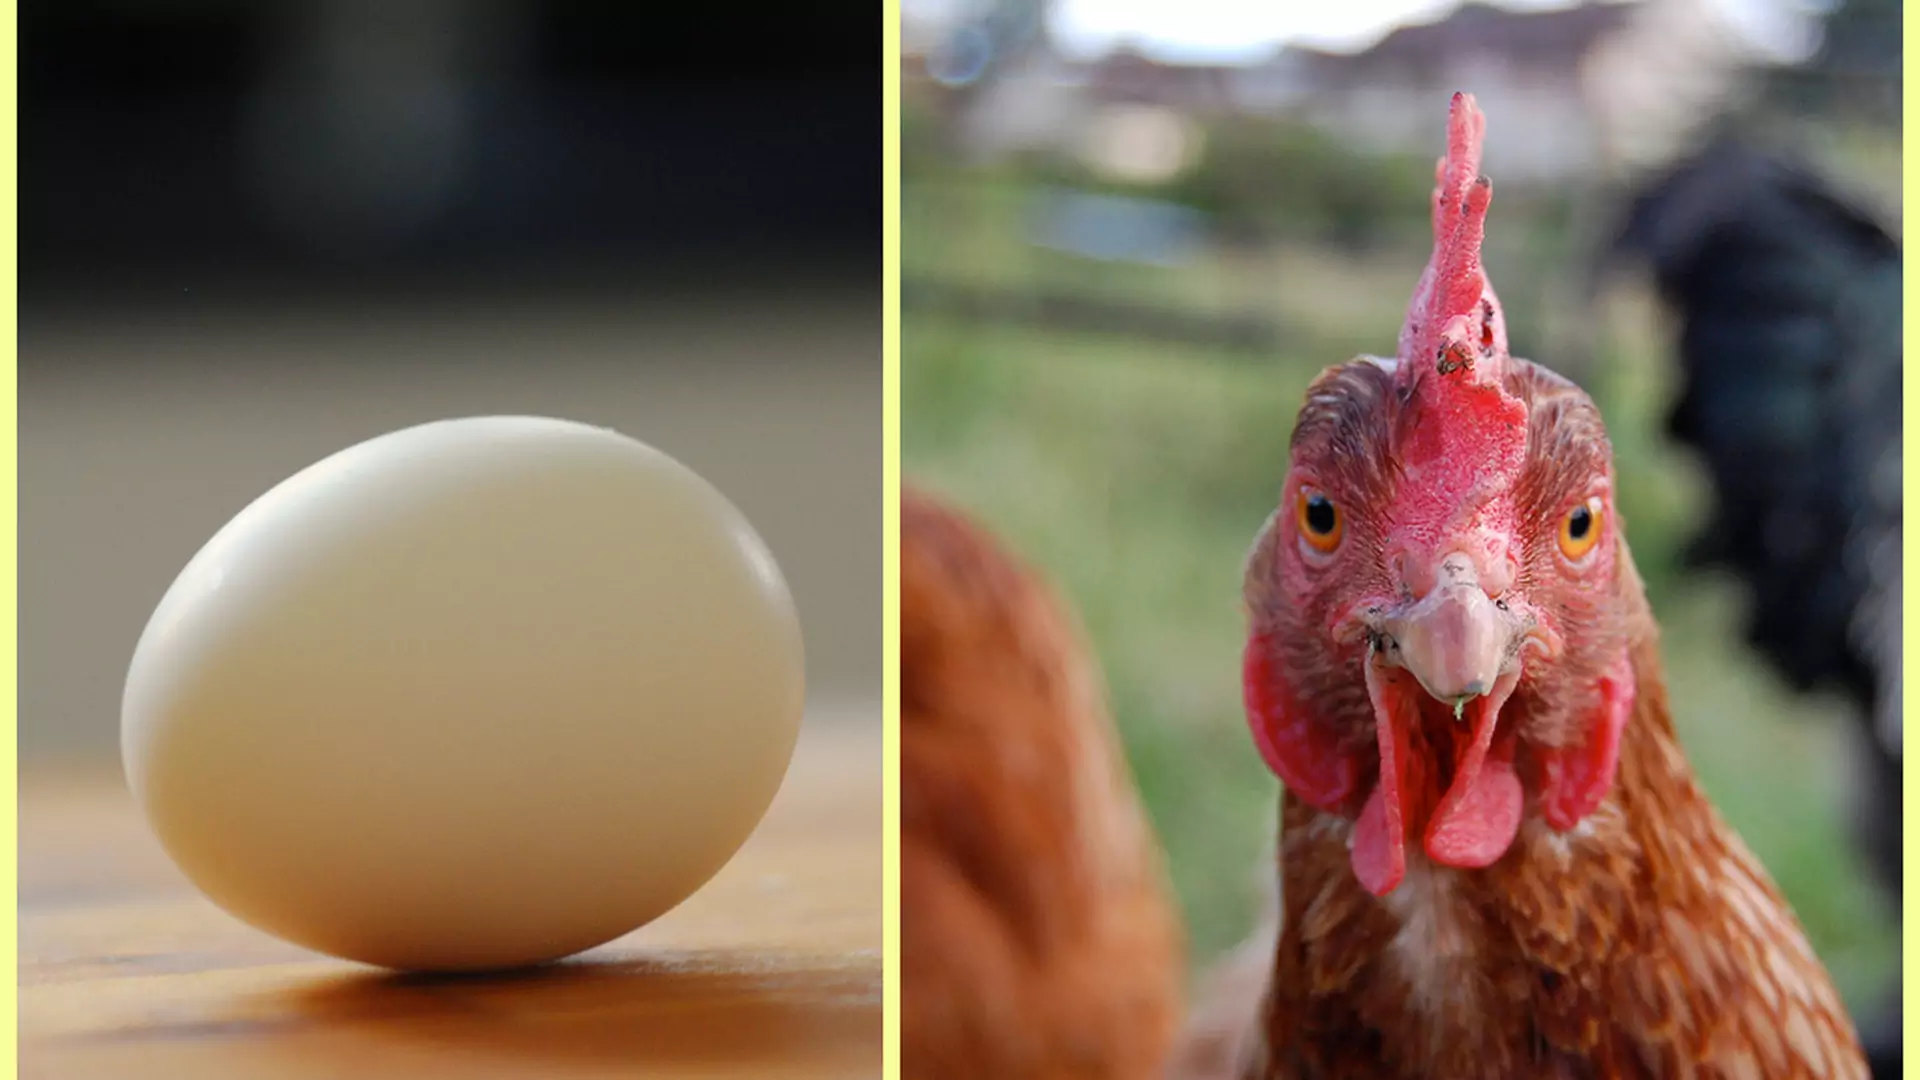 Co było pierwsze: kura czy jajko? Poznaj odpowiedź na to nurtujące pytanie